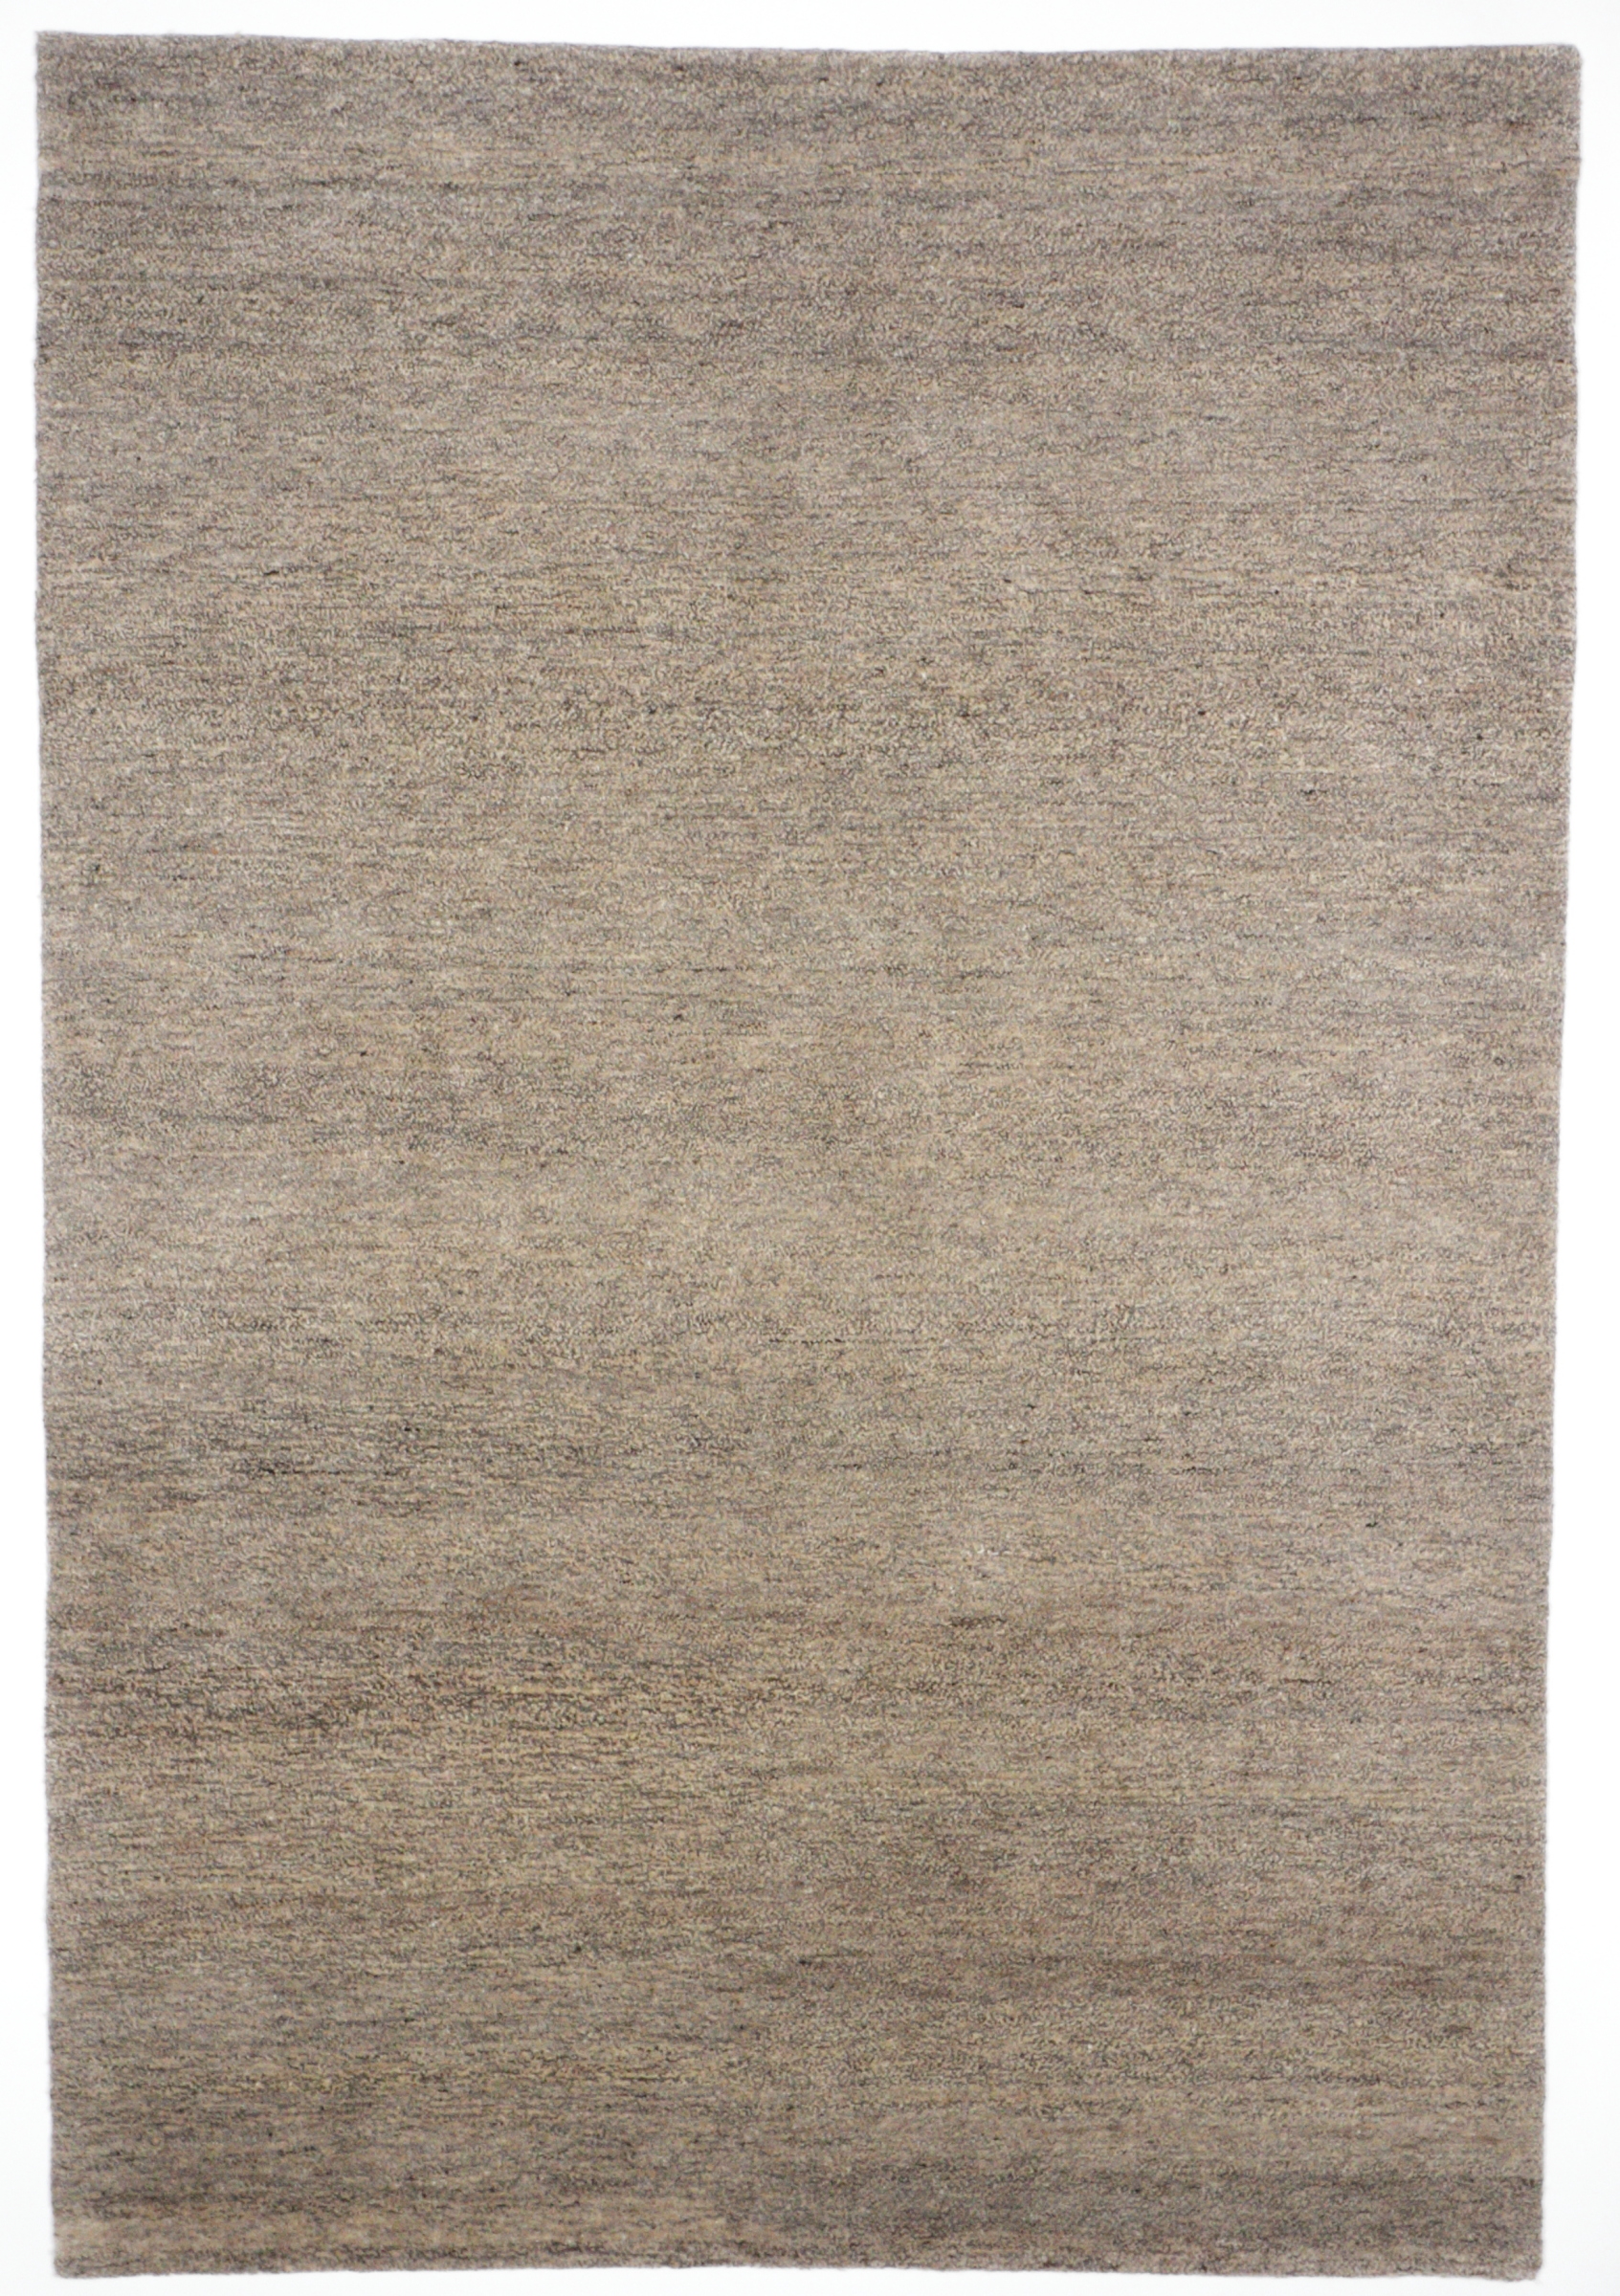 Natur Pur Teppich Uni Mix grau/sand, naturbelassene Schurwolle, handgeknüpft in Indien, Draufsicht